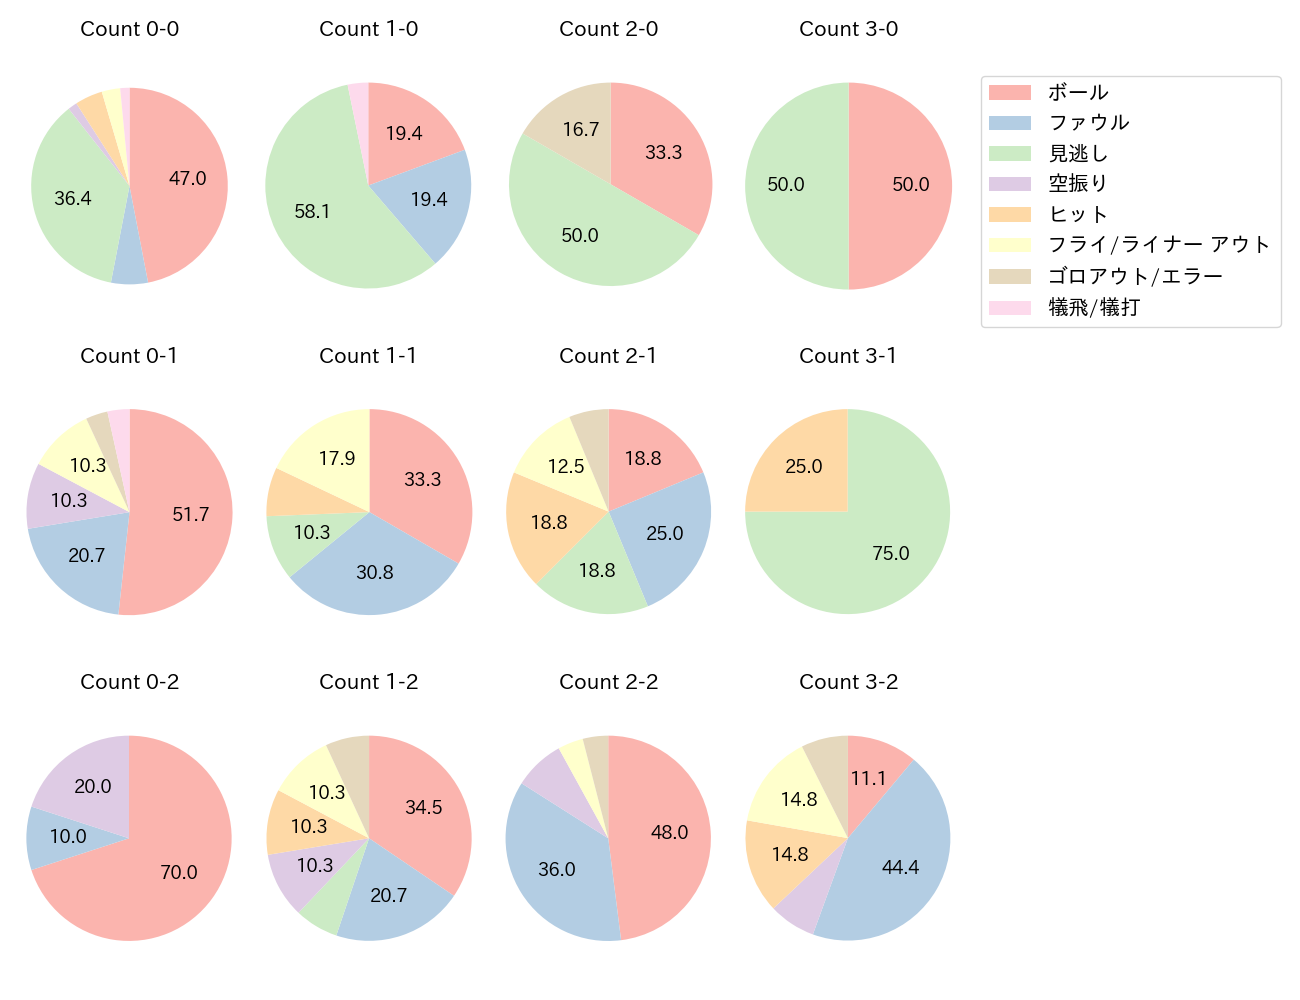 福田 周平の球数分布(2021年5月)